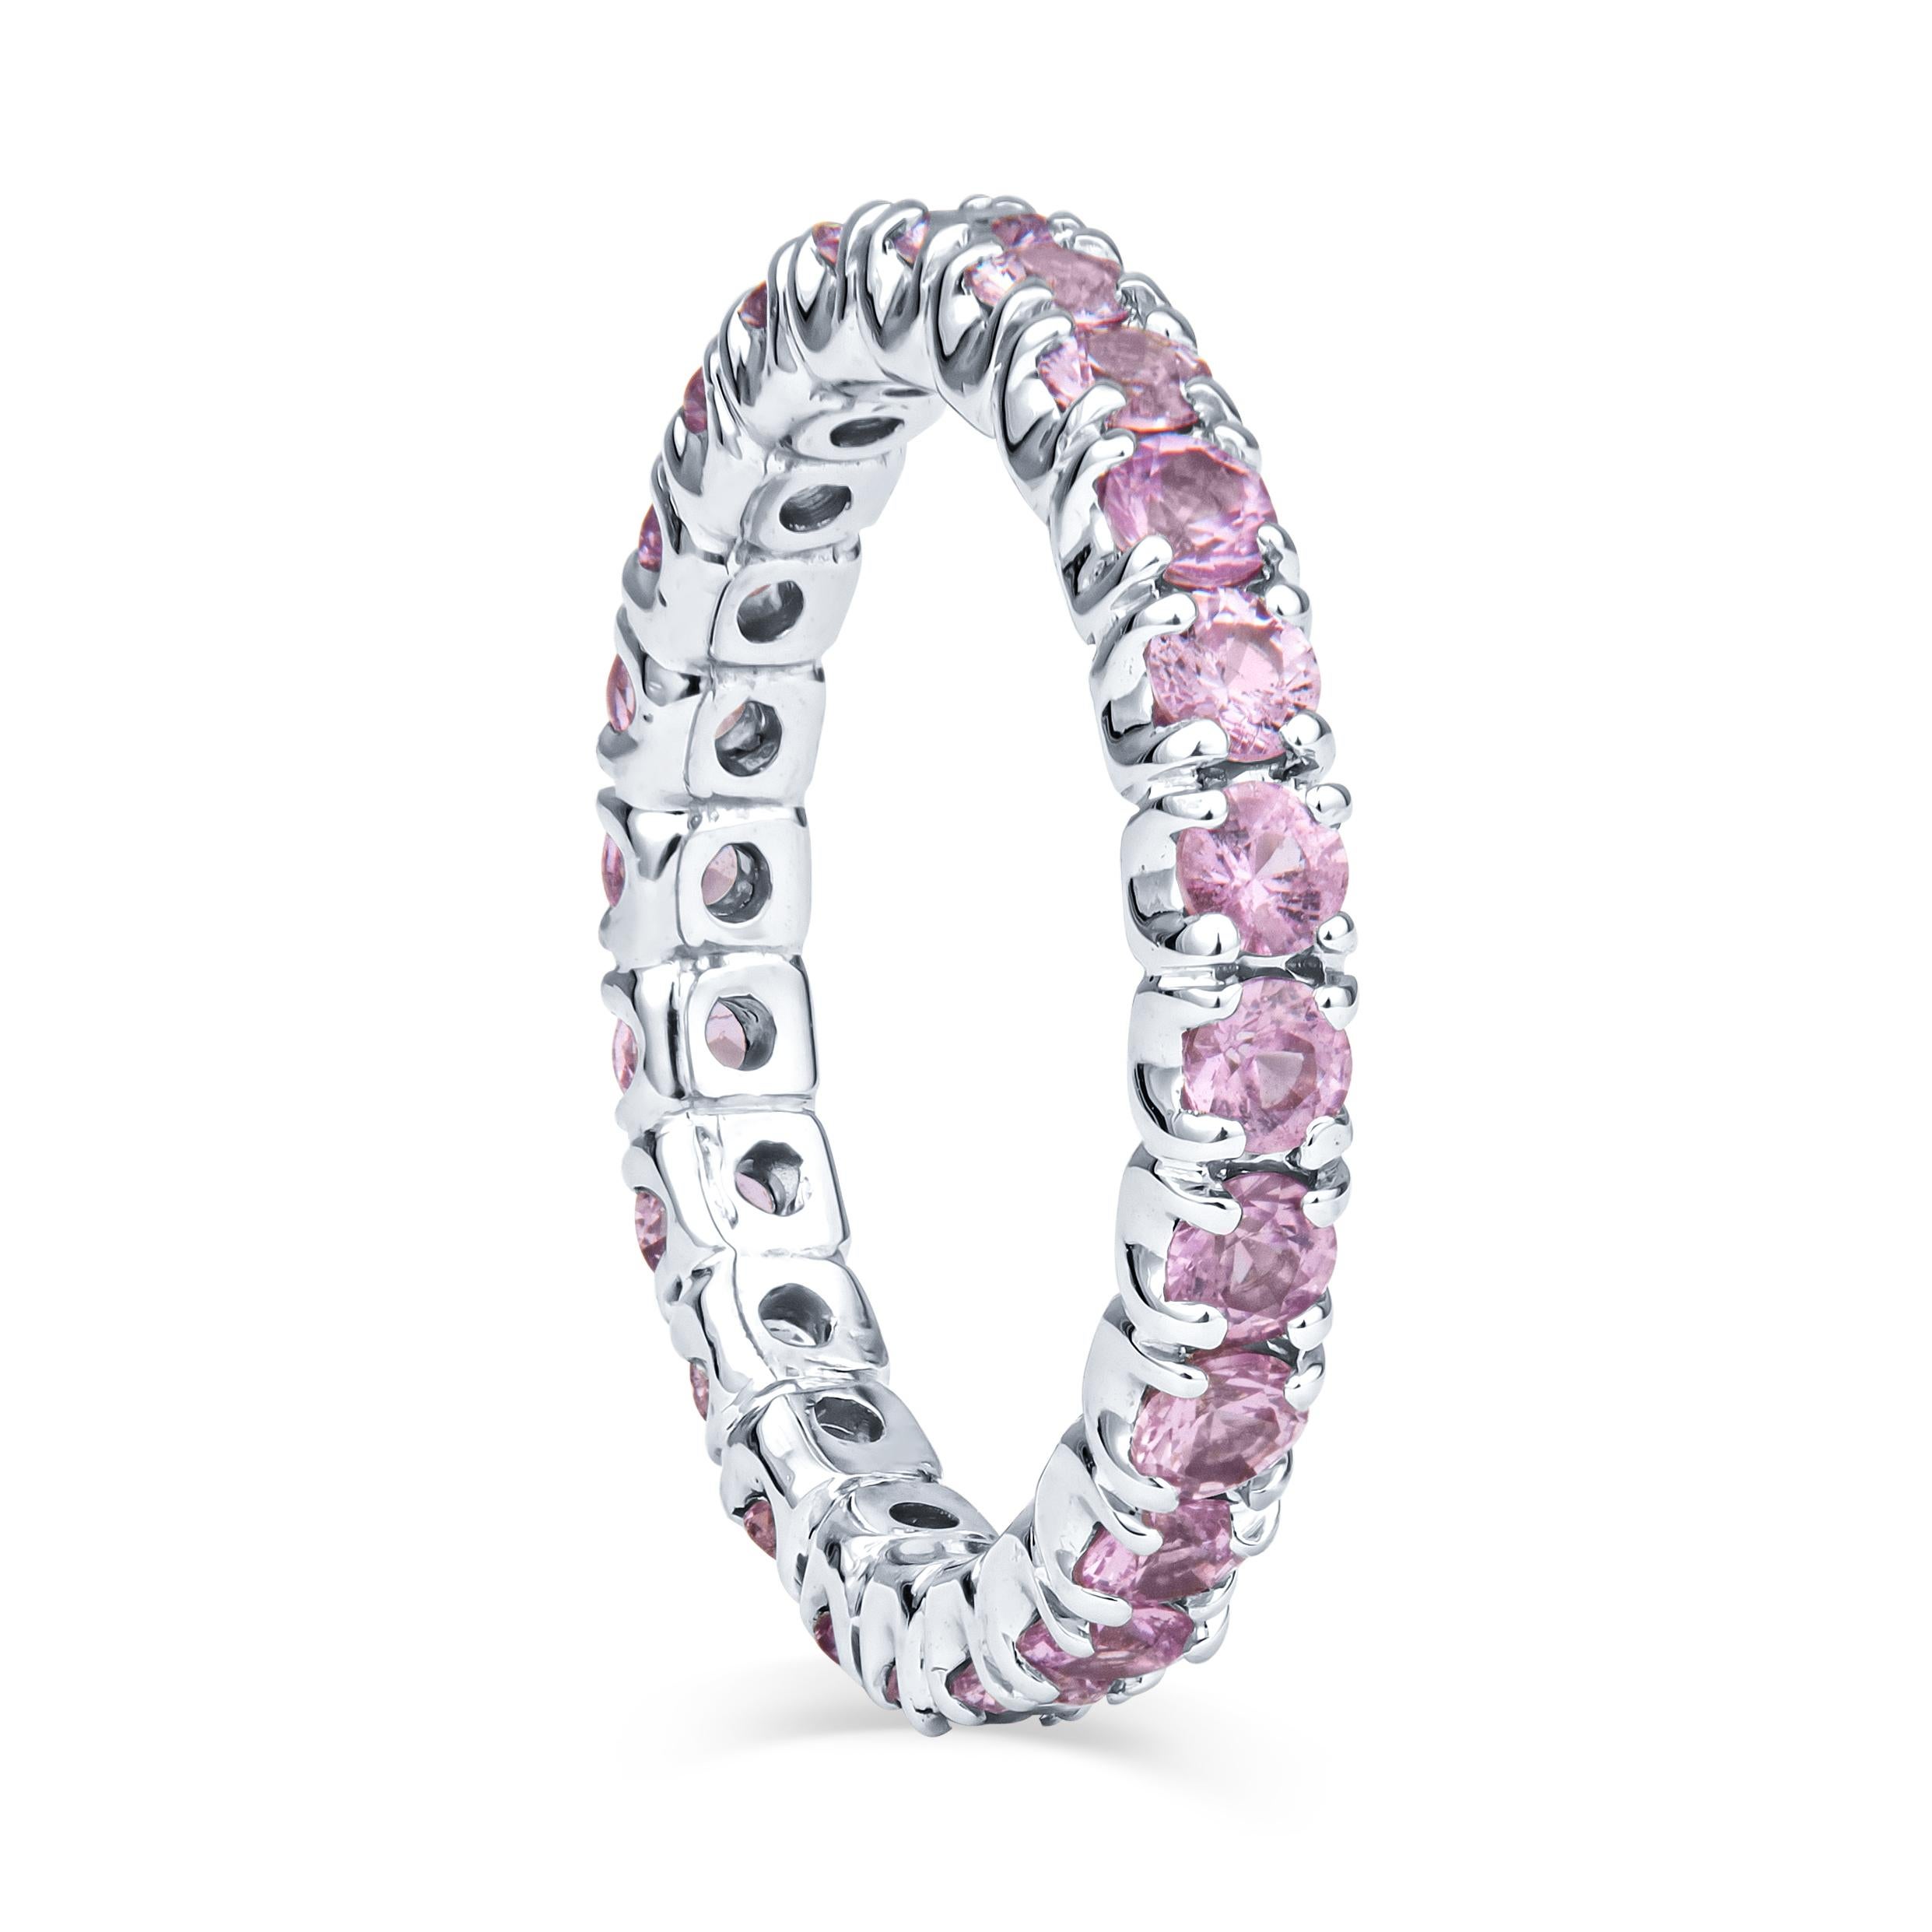 Ce précieux bracelet empilable est composé de 1,37 ct de poids total de saphirs ronds rose clair, sertis dans un bracelet éternité en or blanc 14 carats. Il s'agit actuellement d'une taille 4 ; contactez-nous pour les options de dimensionnement.